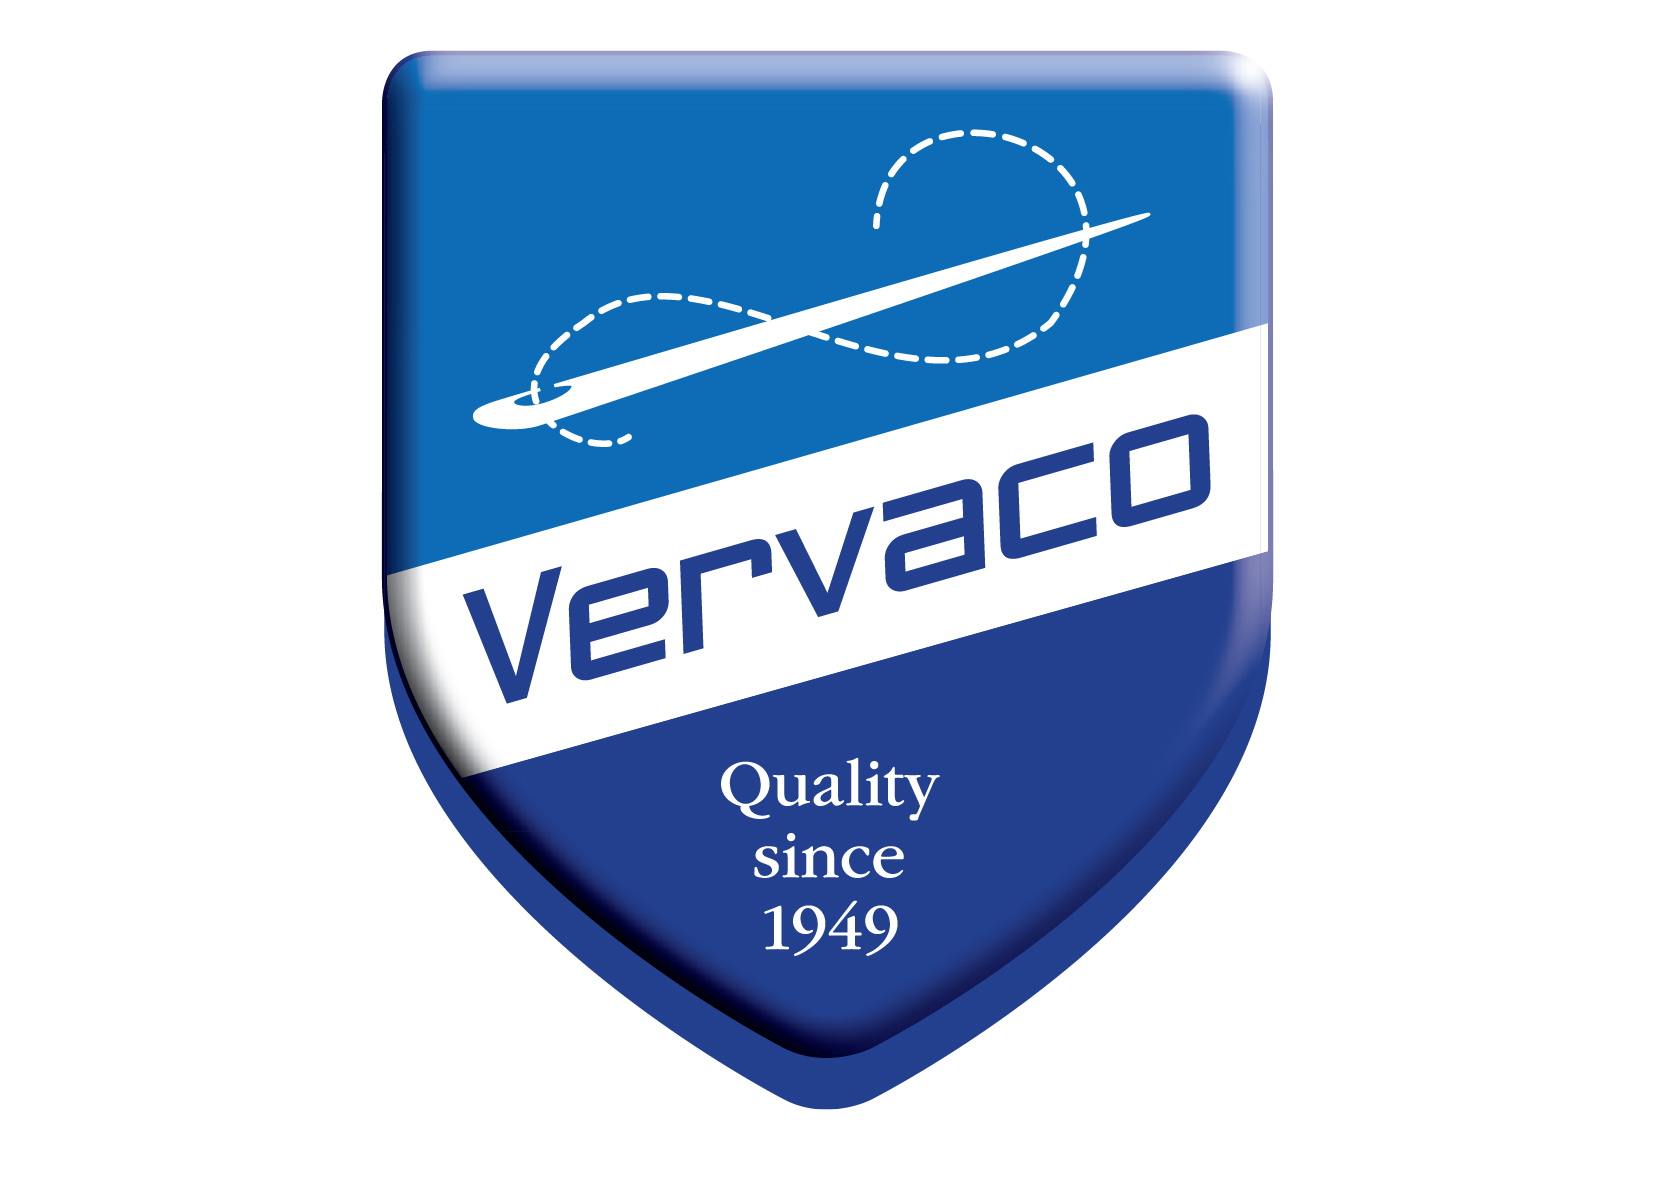 Vervaco / Verachtert / Lanarte